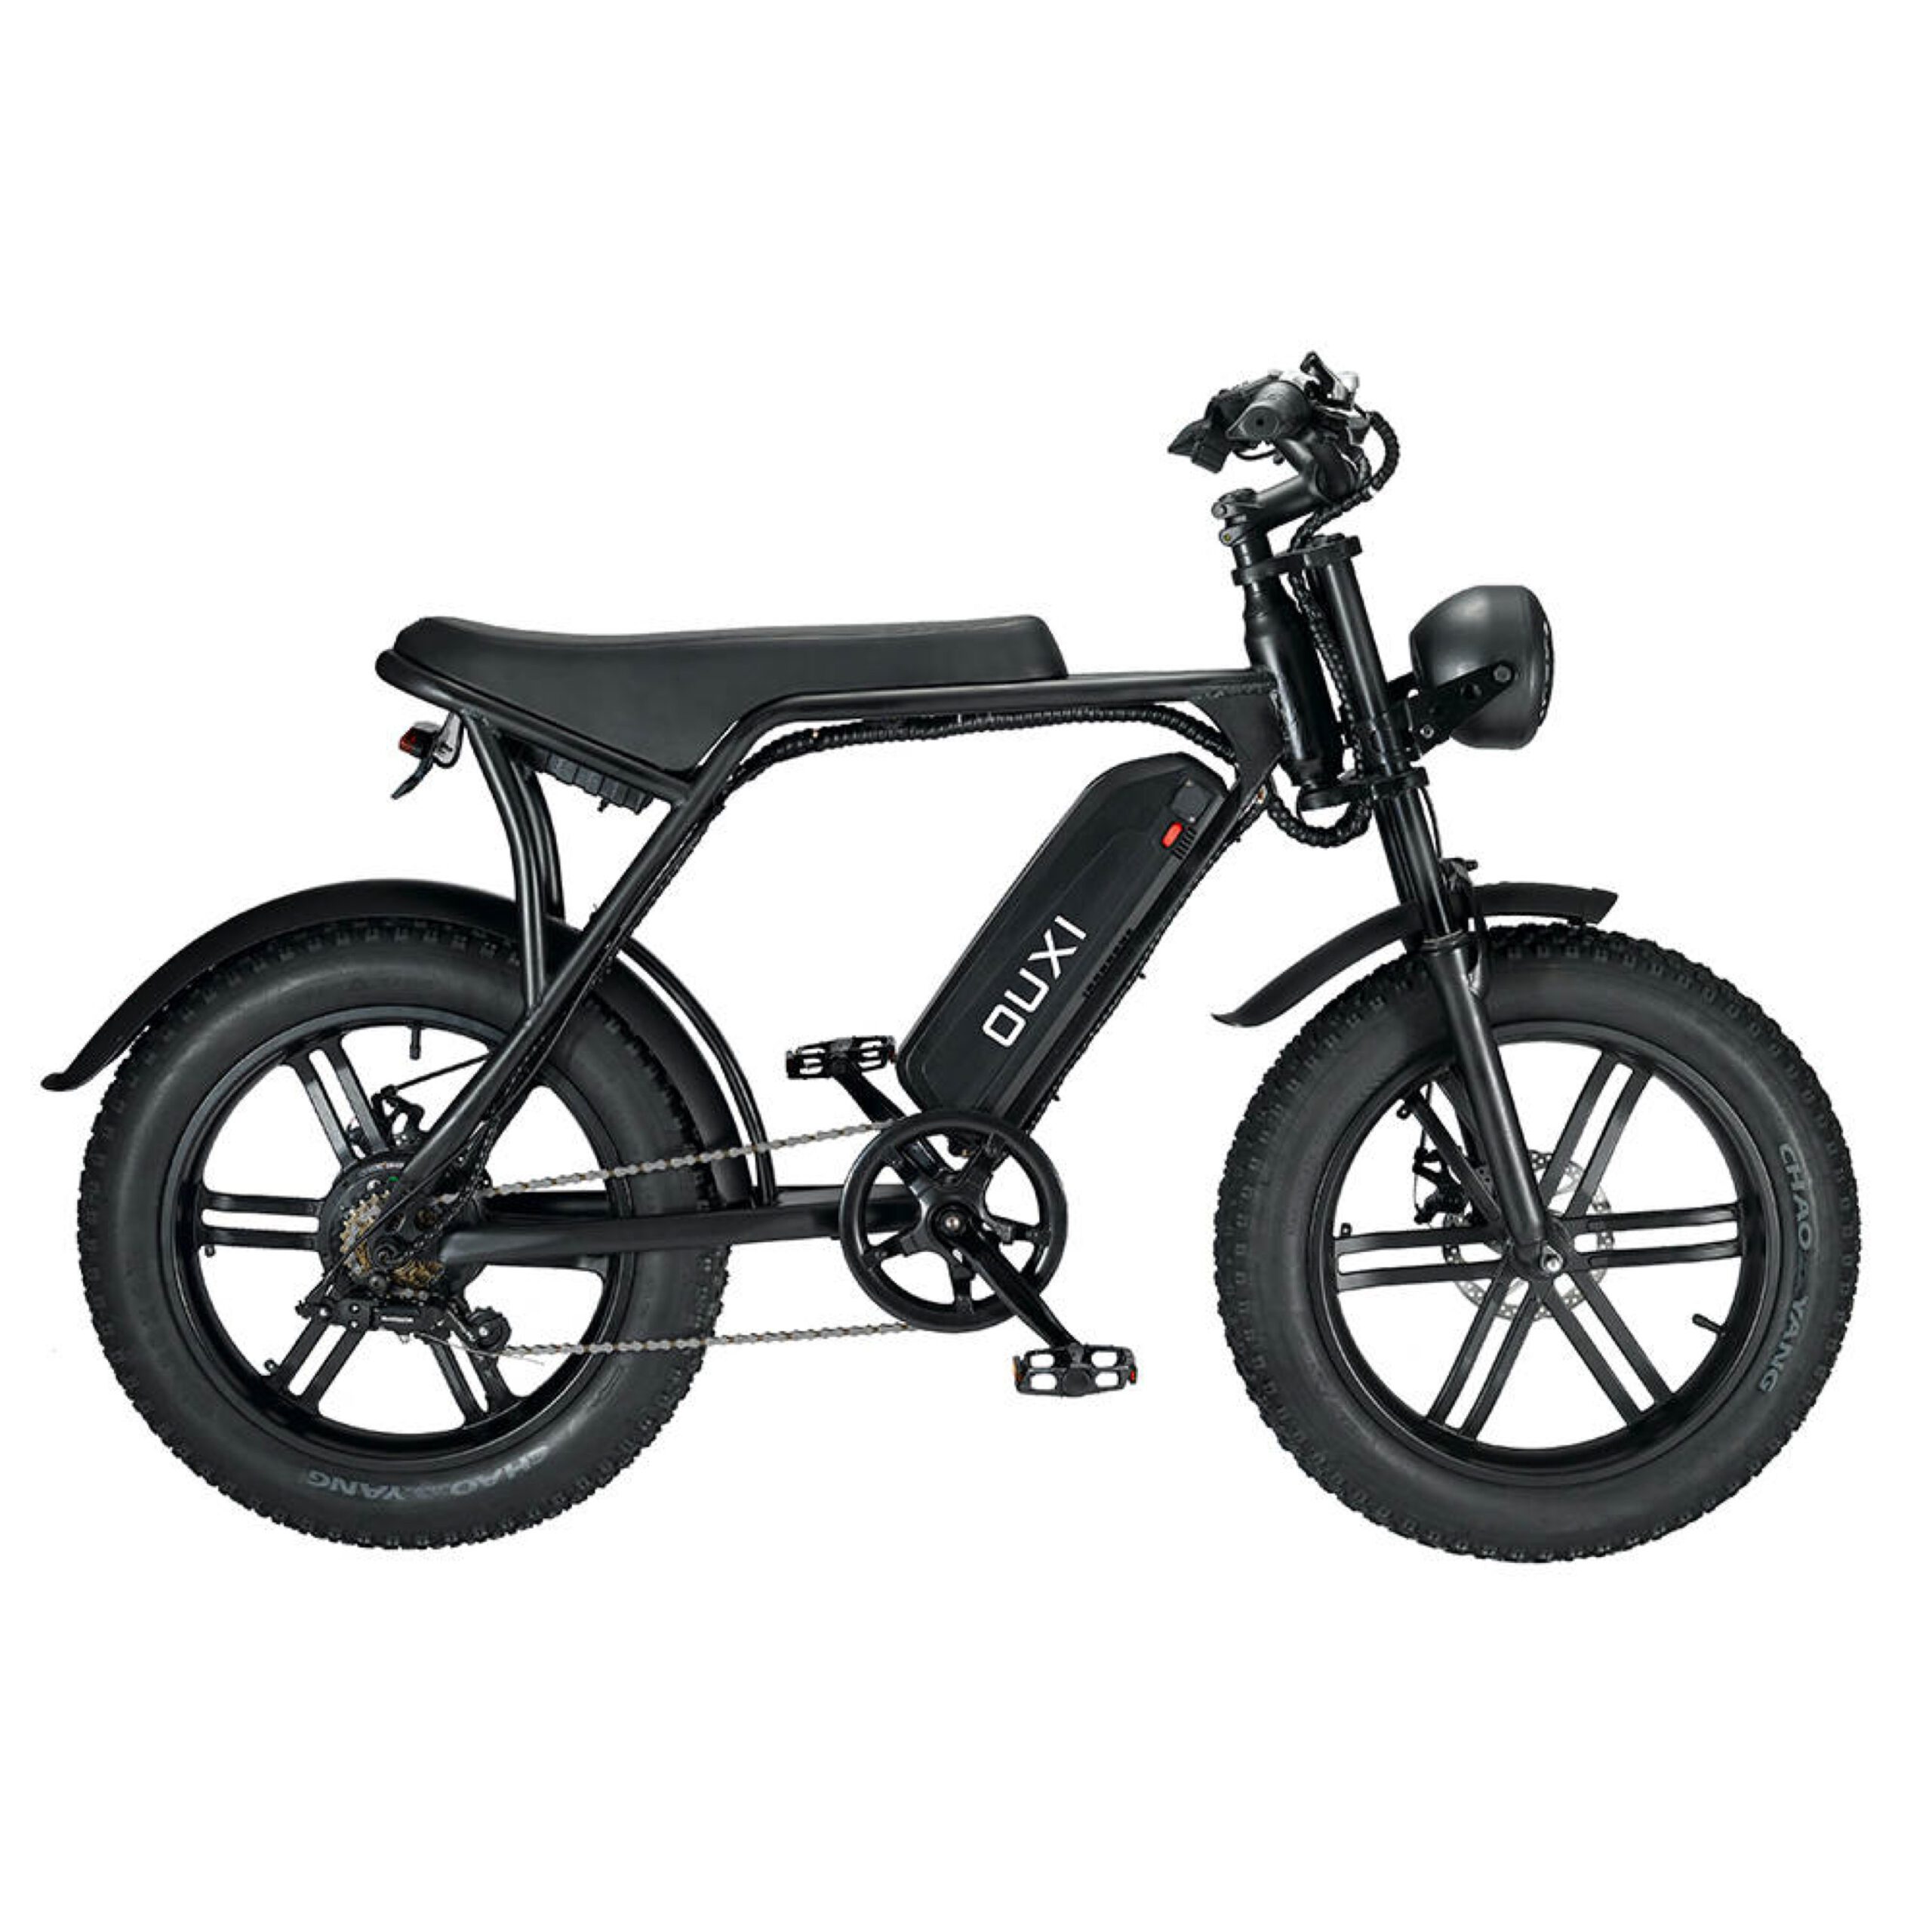 Ouxi V8 Fatbike E-bike 250Watt topsnelheid 25 km/u 20” banden – 7 versnellingen Deze model is toegestaan conform de Nederlandse wetgeving op de openbare weg.